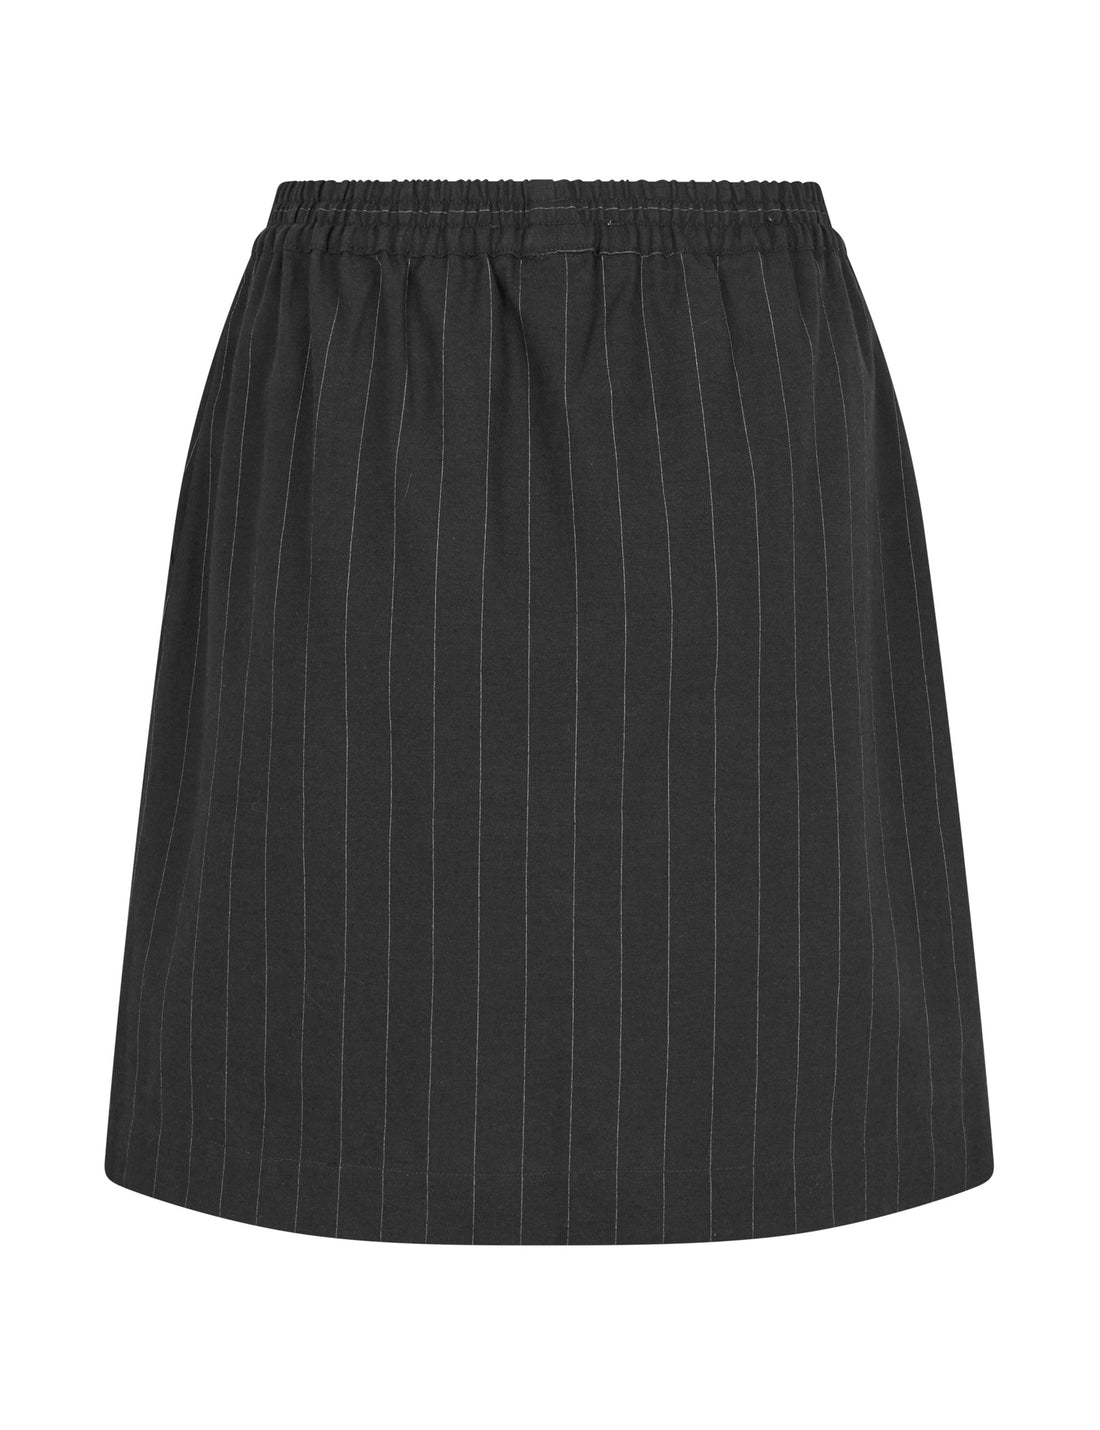 Kamille skirt black/white stripe